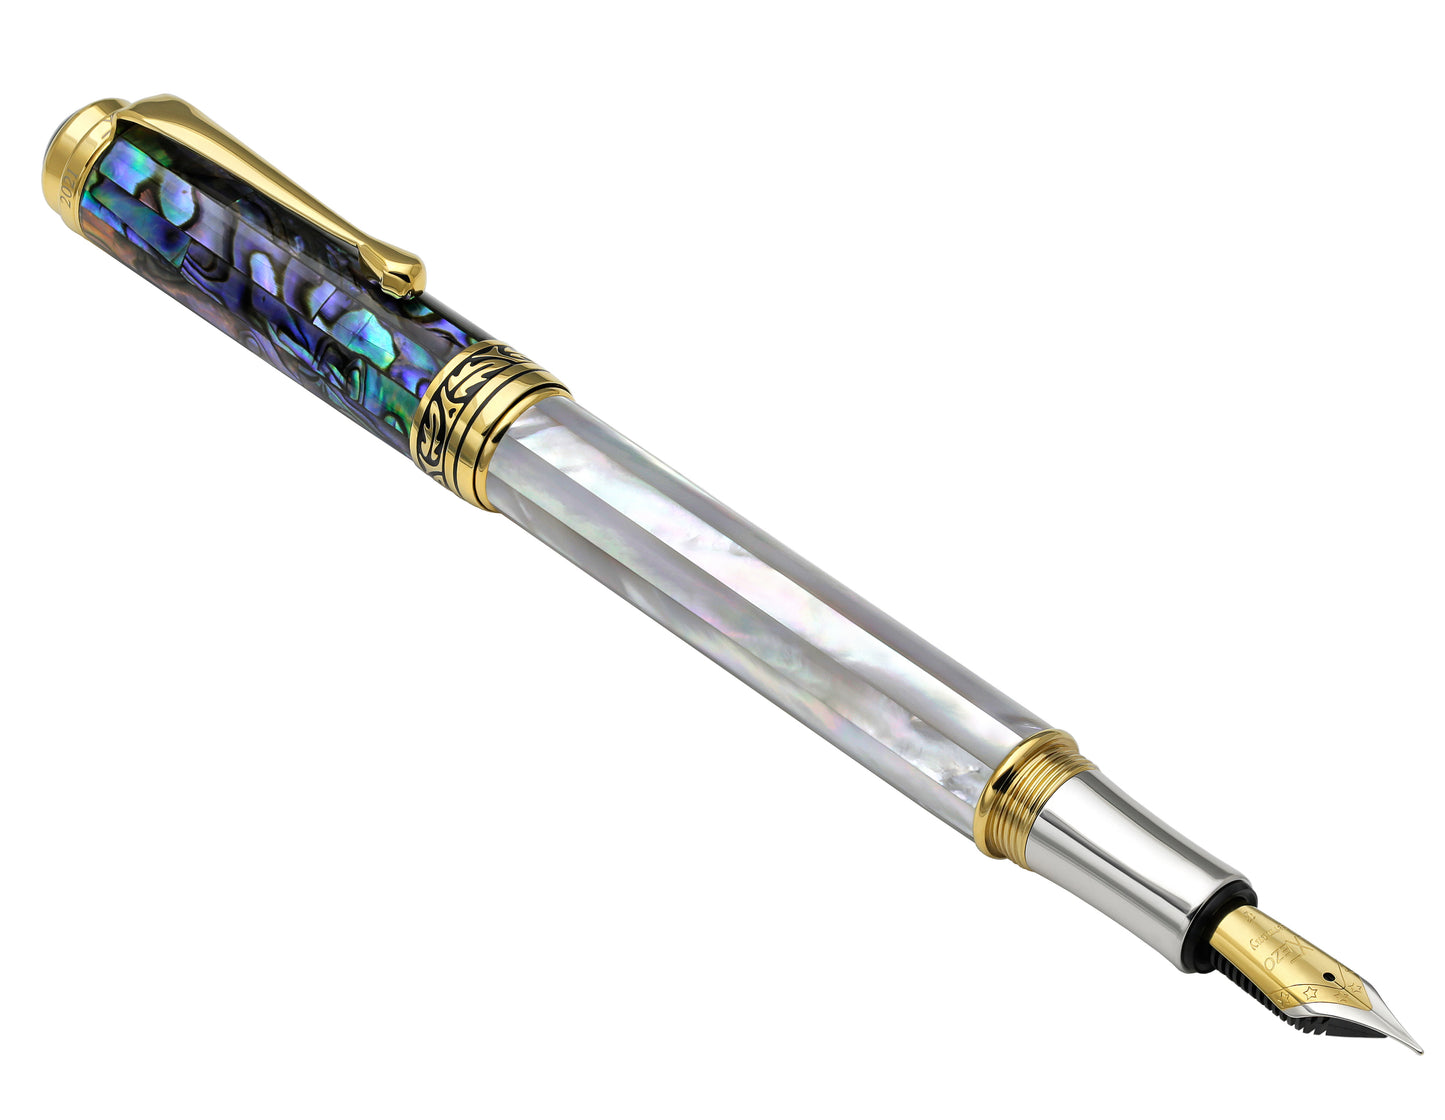 Xezo - Angled view of the Maestro MOP Sea Shell F fountain pen